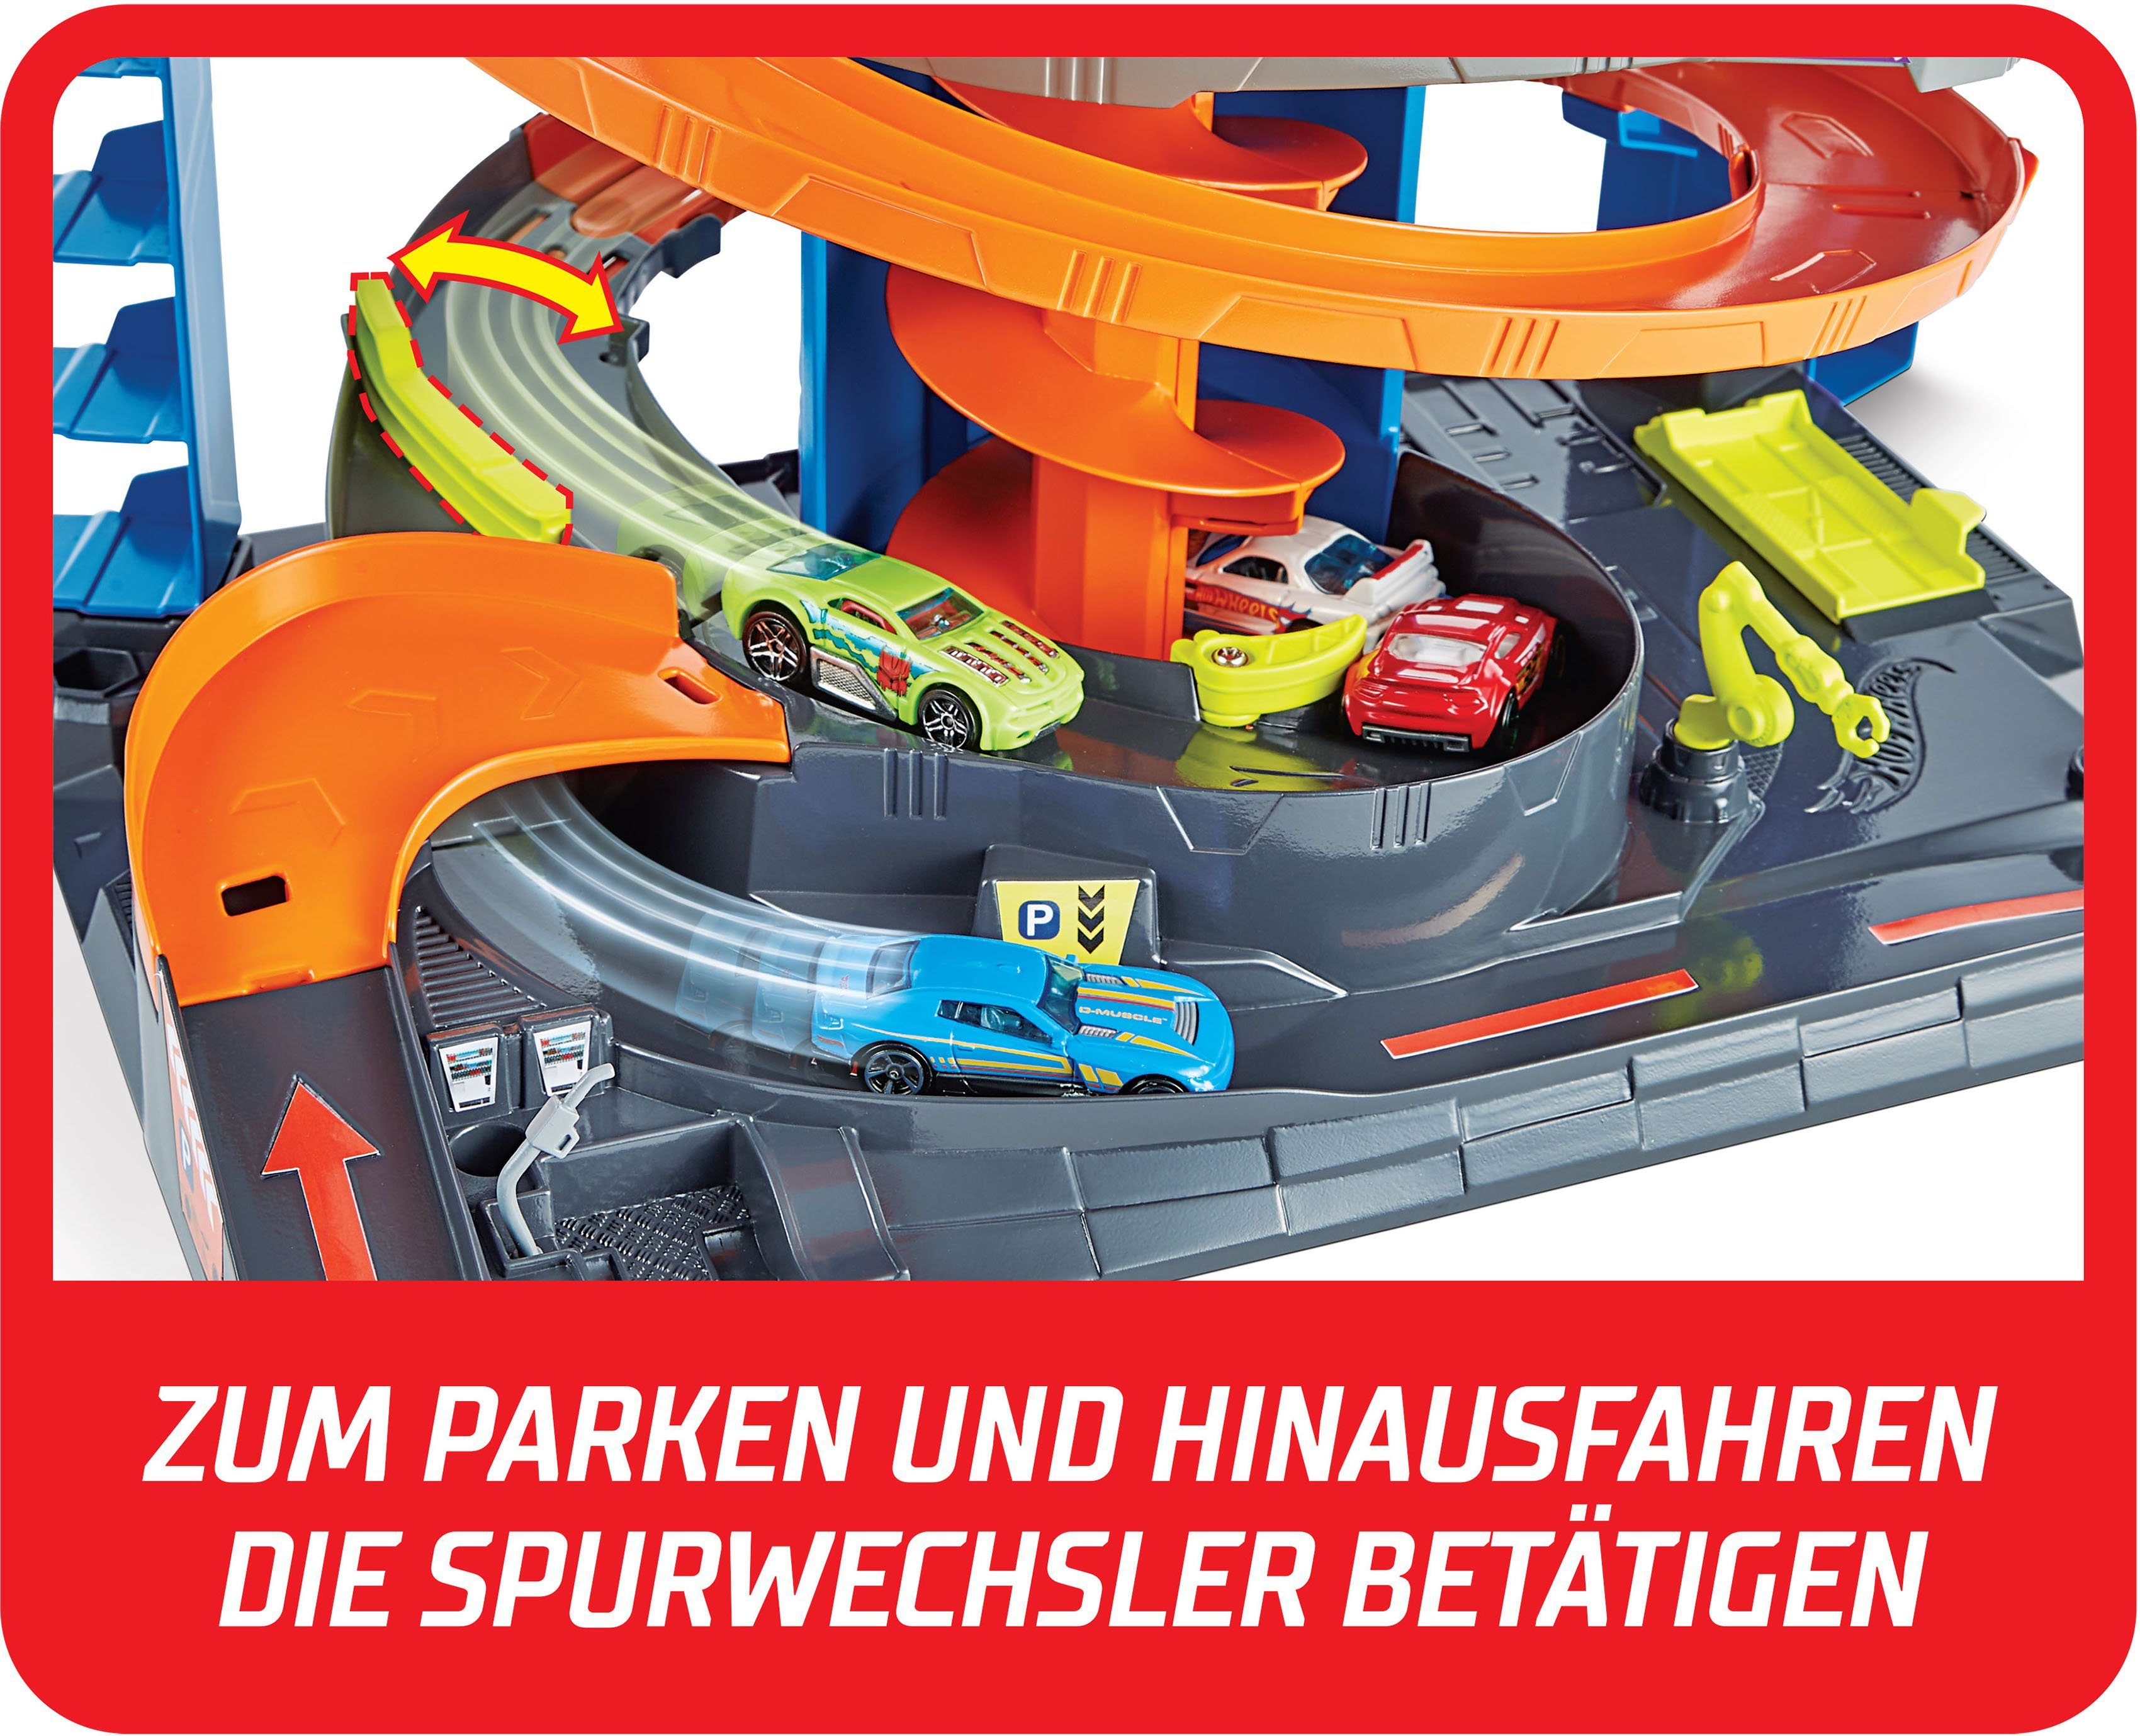 und inkl. 1 Parkgarage Spielzeugauto City Wheels Zubehör Spielset, Spiel-Parkgarage Hot